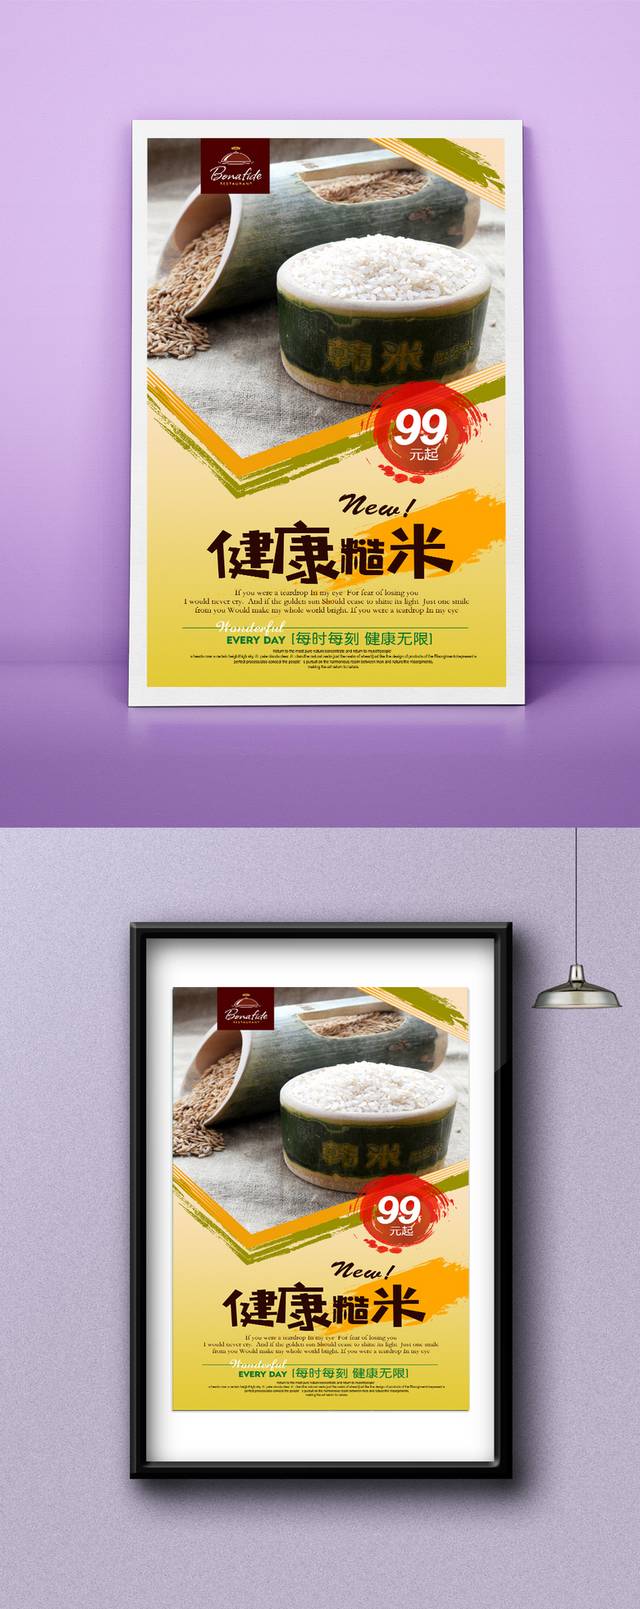 高档糙米促销海报设计